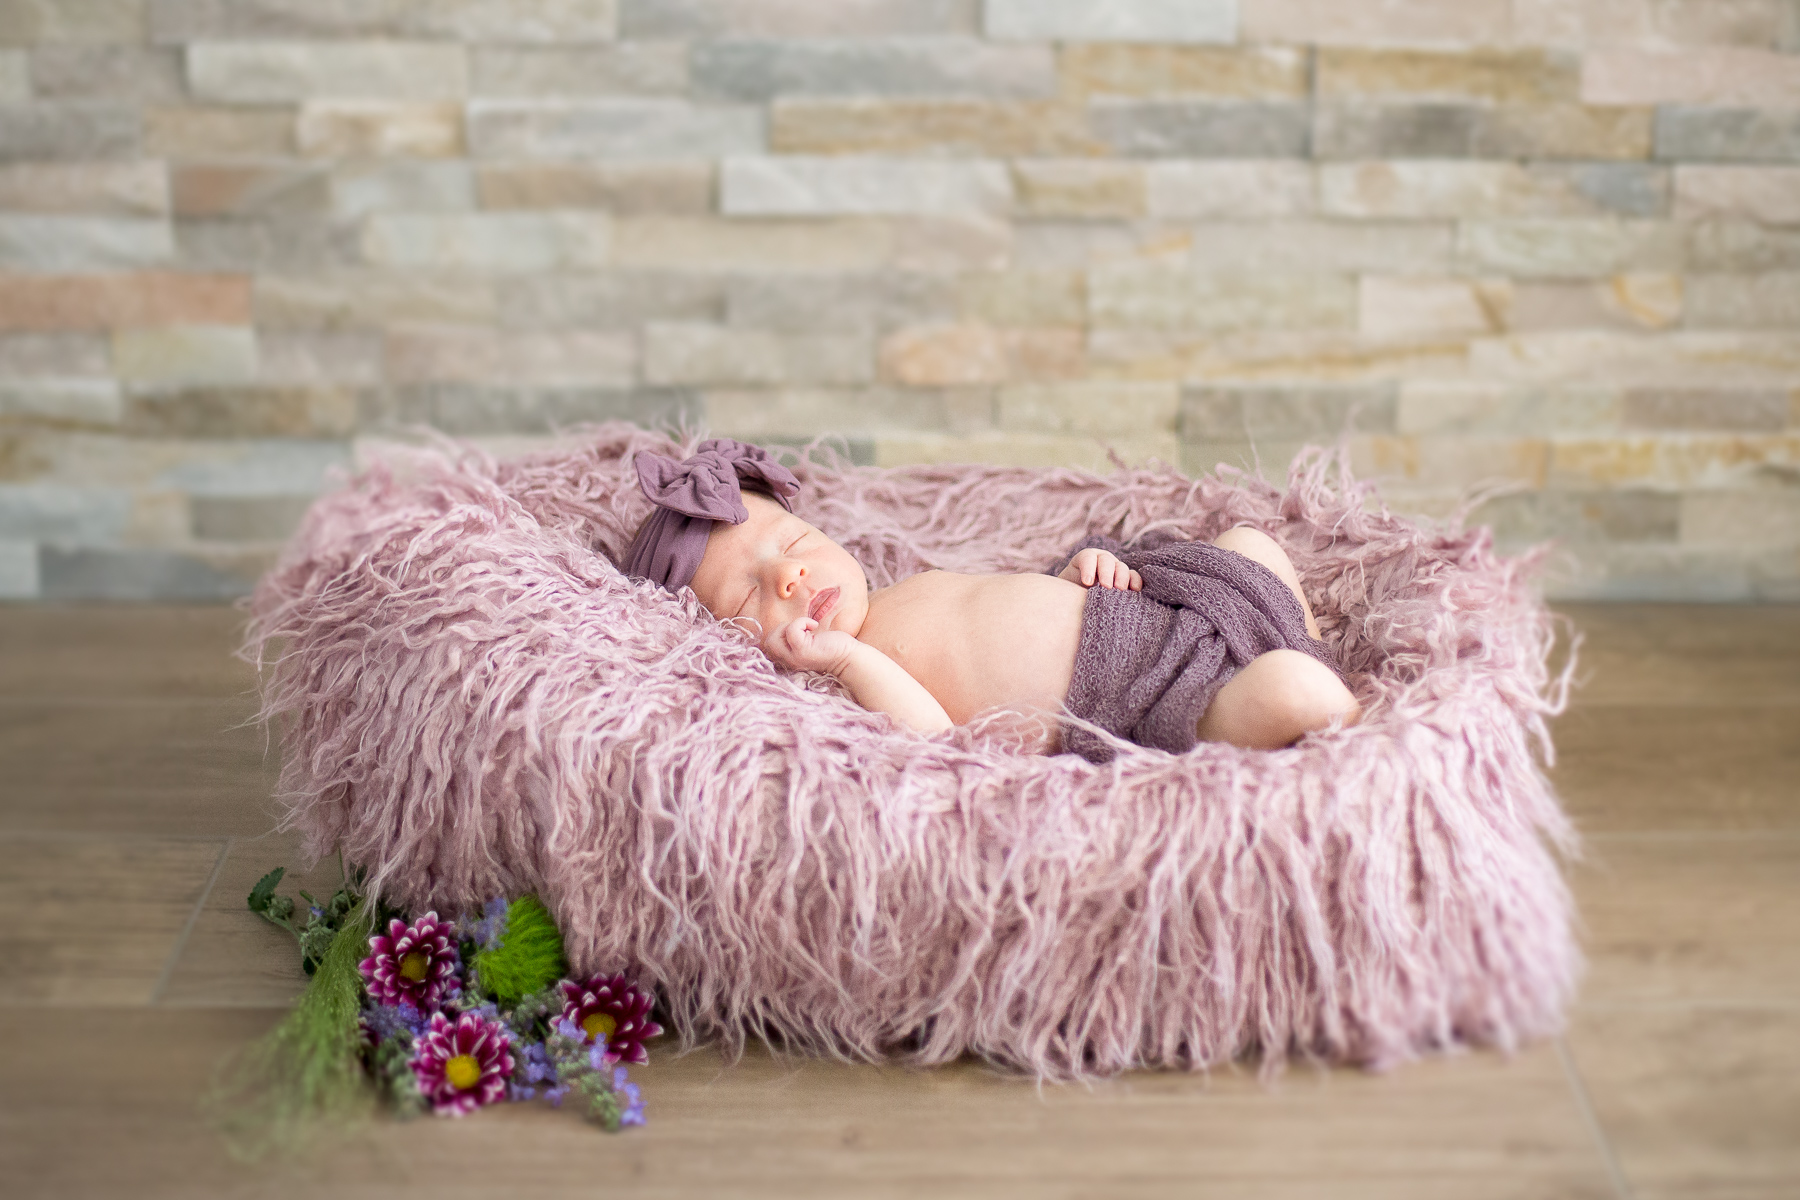 Neugeborenes Kleinkind mit Babybekleidung schlafend im dekorierten Fellbettchen mit Wiesenblumen